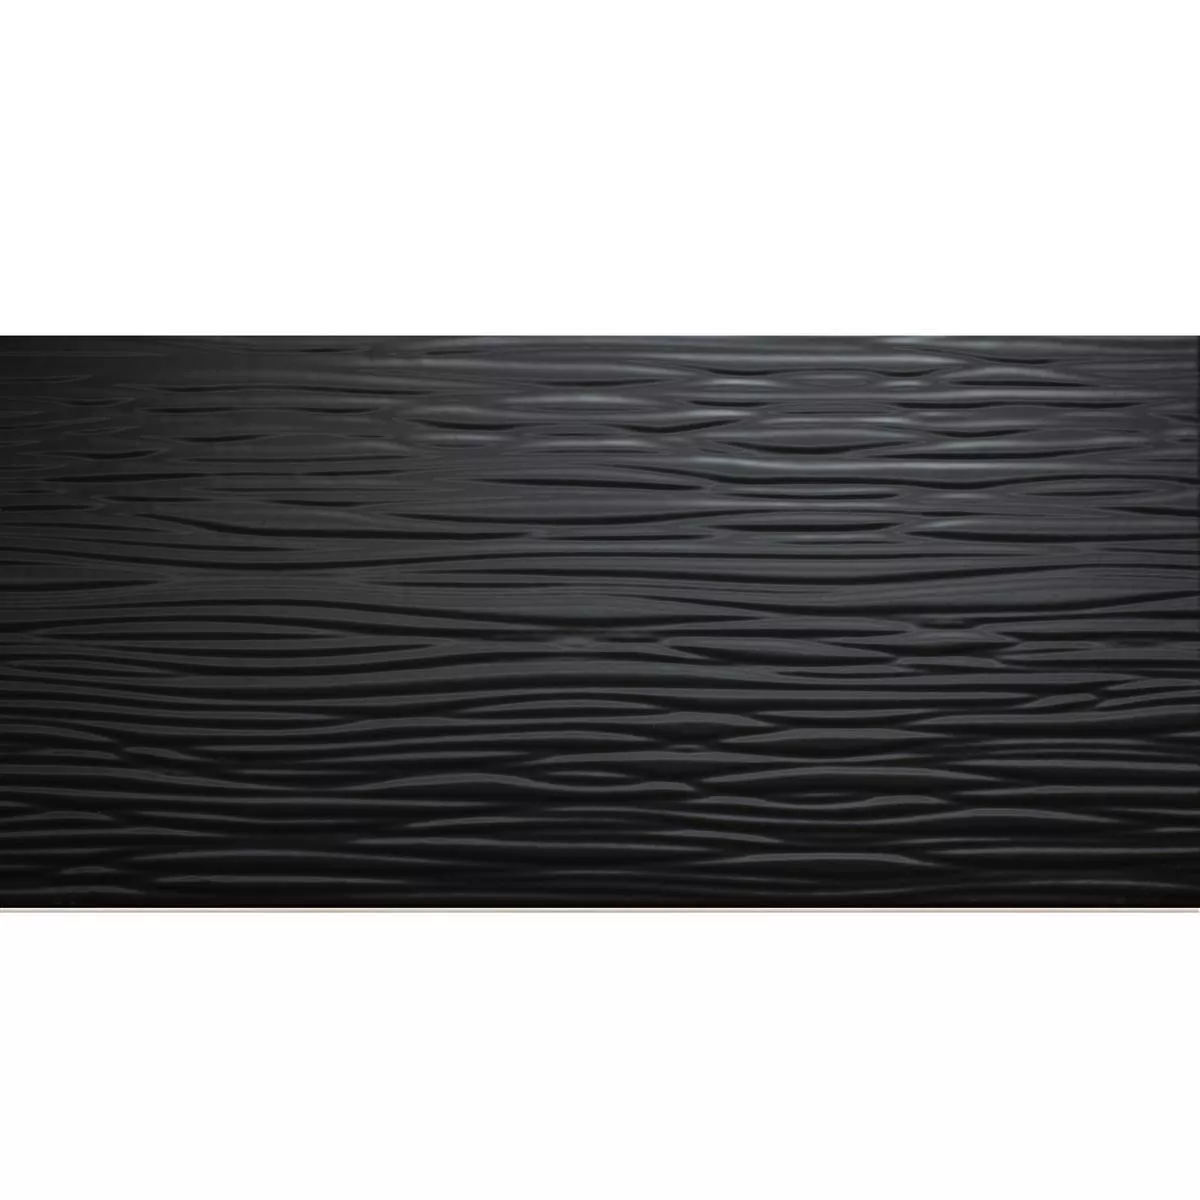 Muster Wandfliesen Norway Strukturiert Glänzend 25x50cm Schwarz